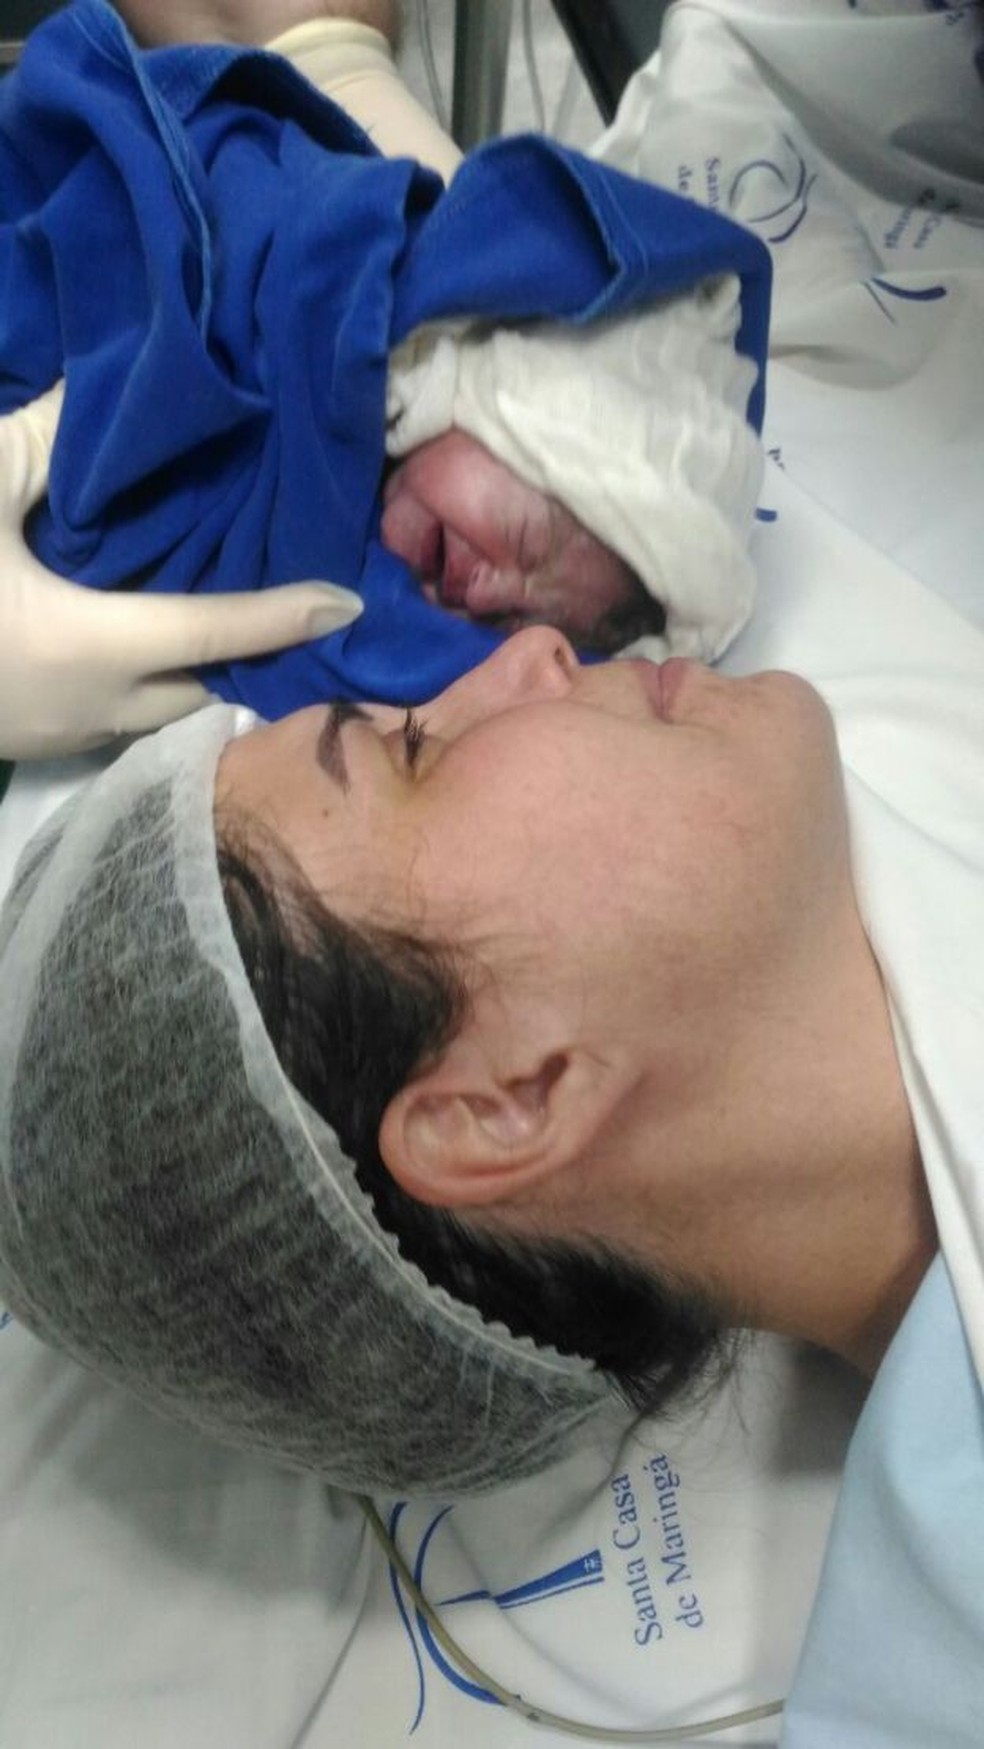 Michelle no parto do filho: só depois do terceiro mês de quimioterapia ela conseguiu segurar o bebê sem ajuda — Foto: Michelle Munhoz/Arquivo Pessoal/BBC